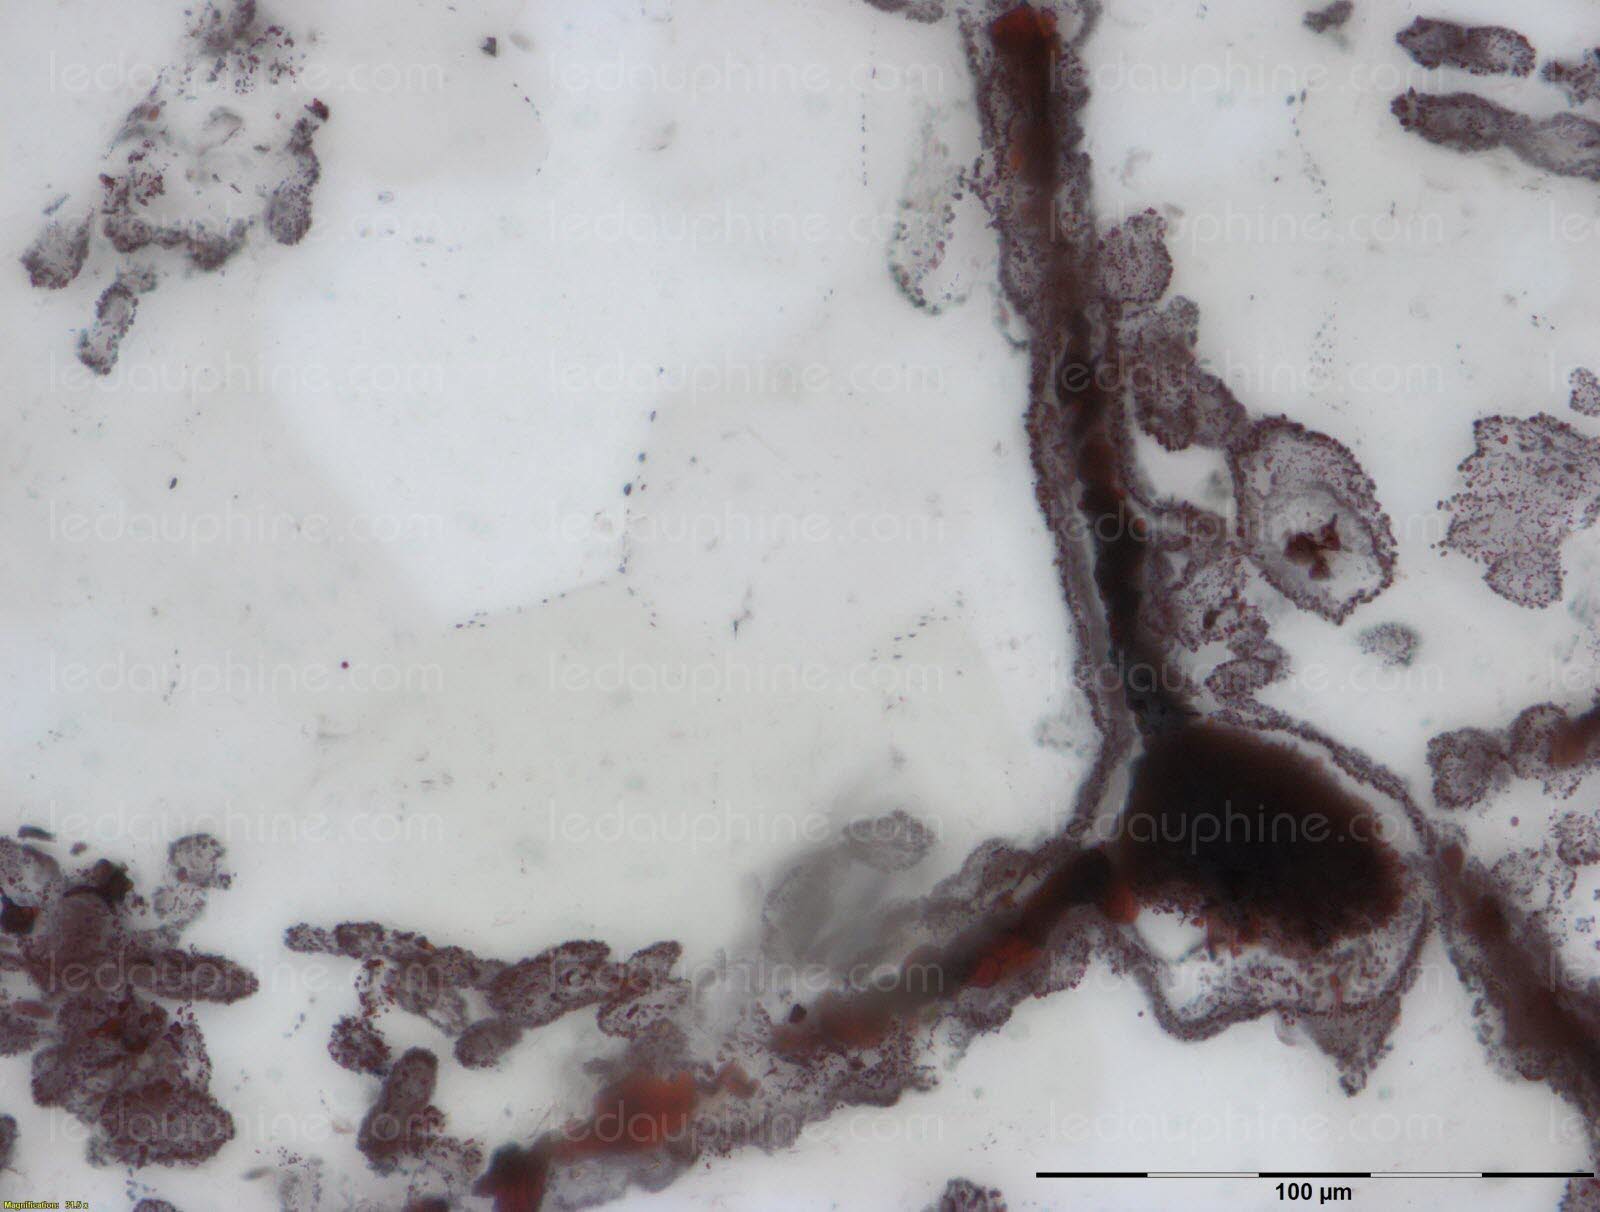 les-scientifiques-ont-mis-en-evidence-ces-microfossiles-dans-des-couches-de-quartz-du-site-geologique-de-la-ceinture-nuvvuagittuq-au-nord-est-du-quebec-(canada)-photo-afp-nature-publishing-group-matt-dodd-1488394042.jpg